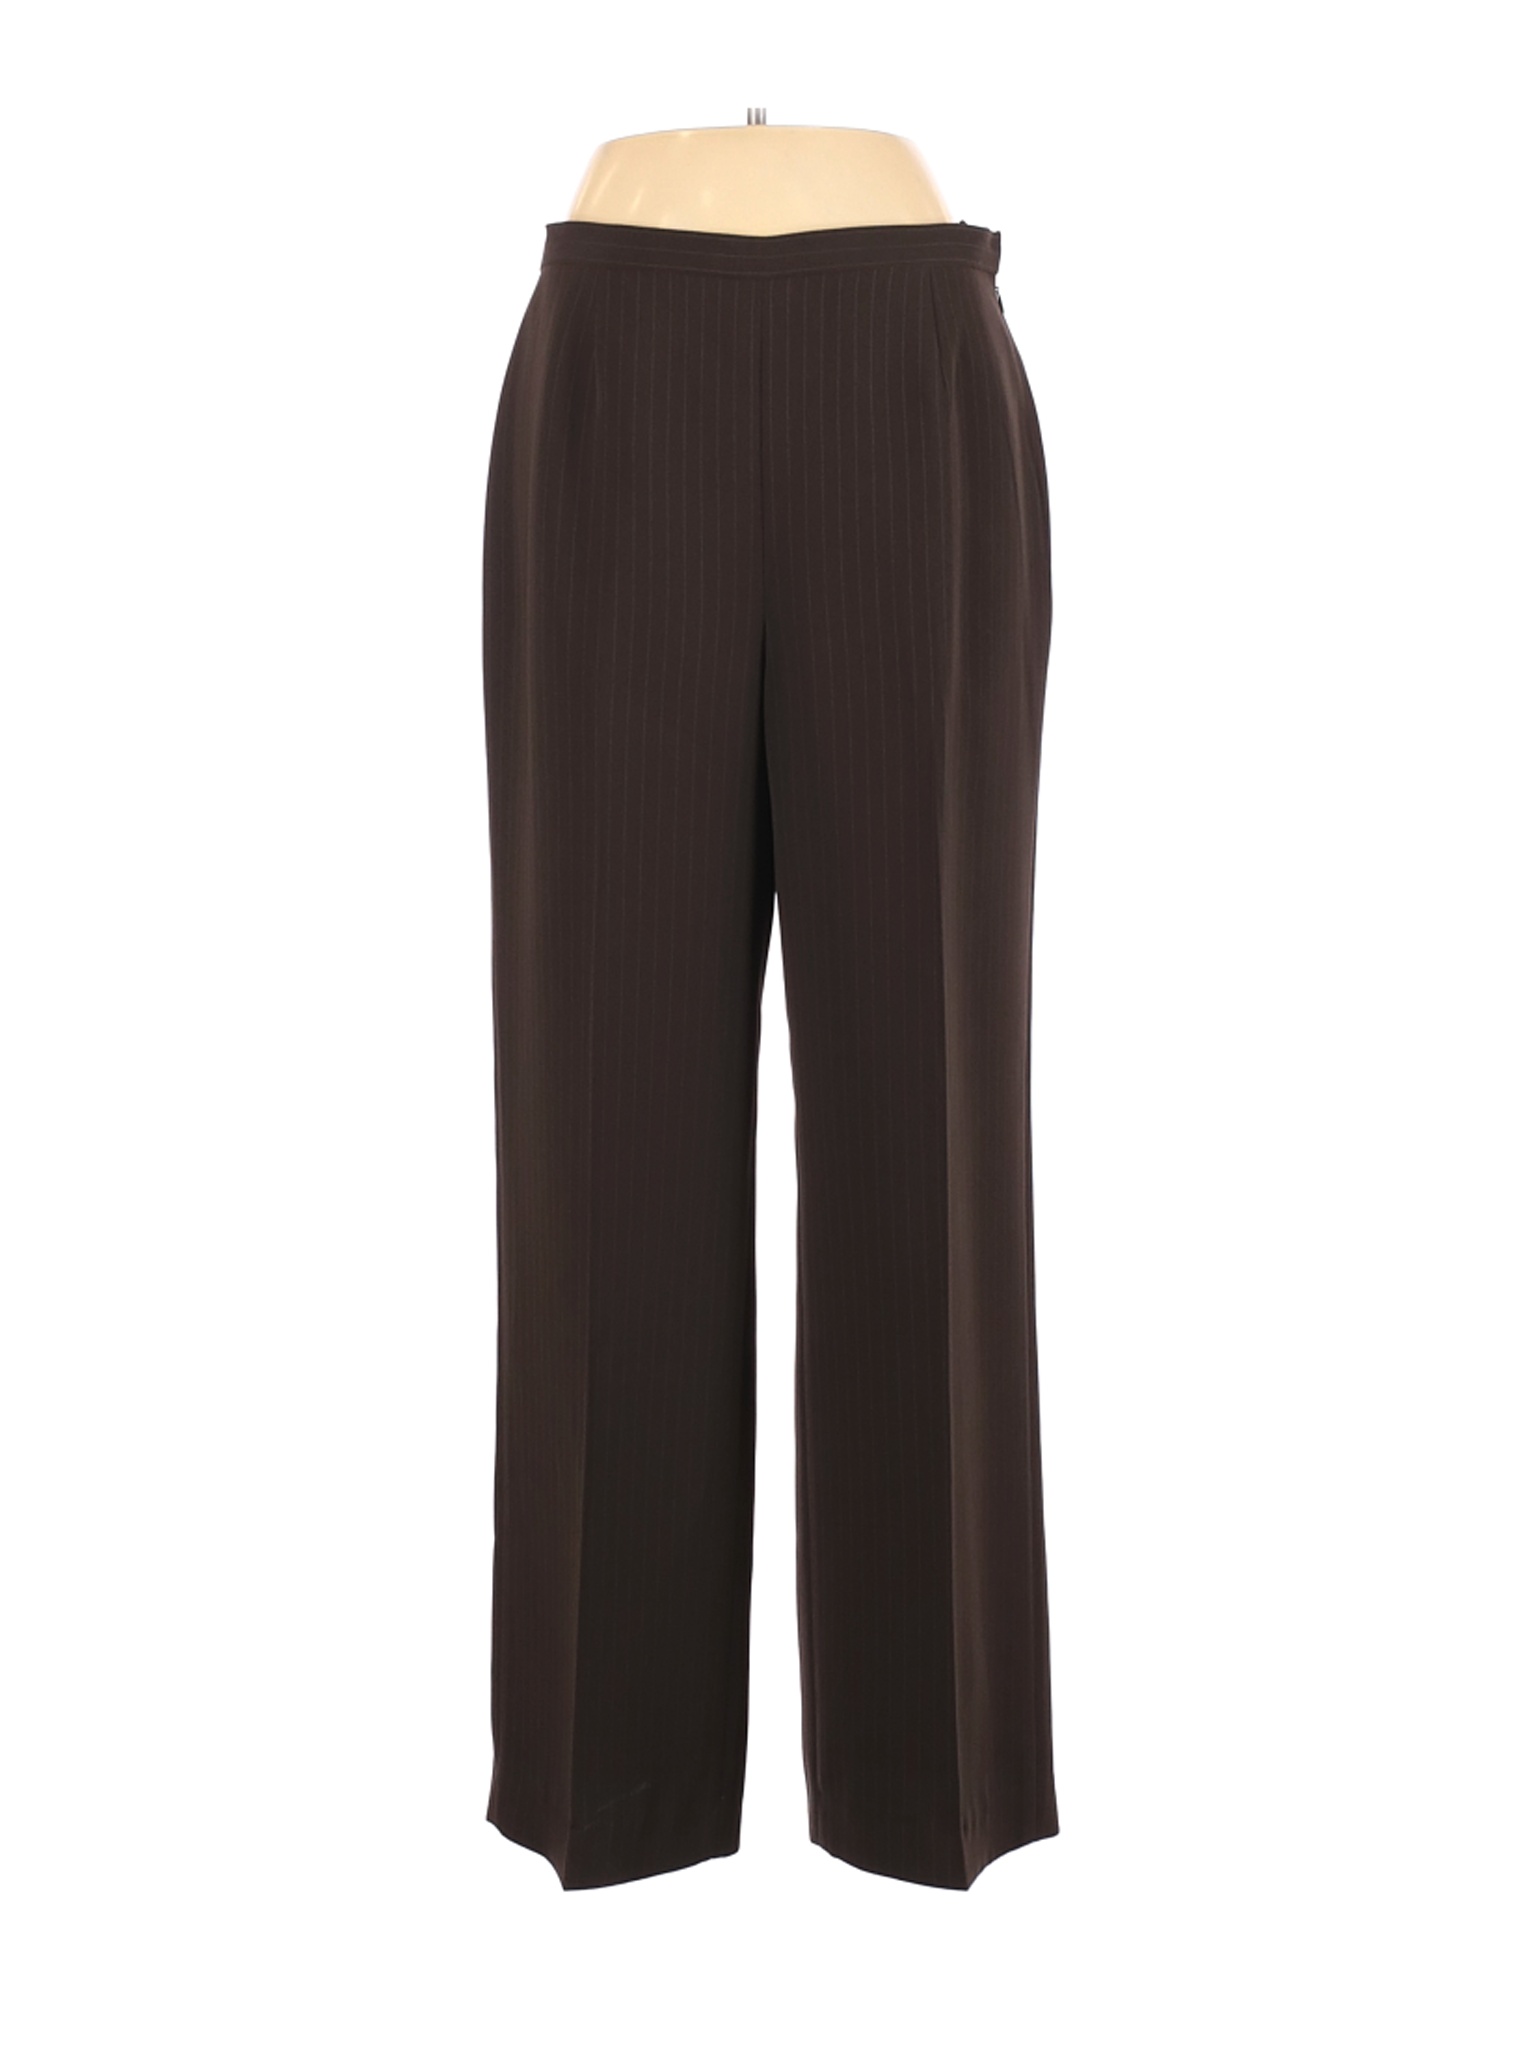 Le Suit Women Brown Dress Pants 8 | eBay